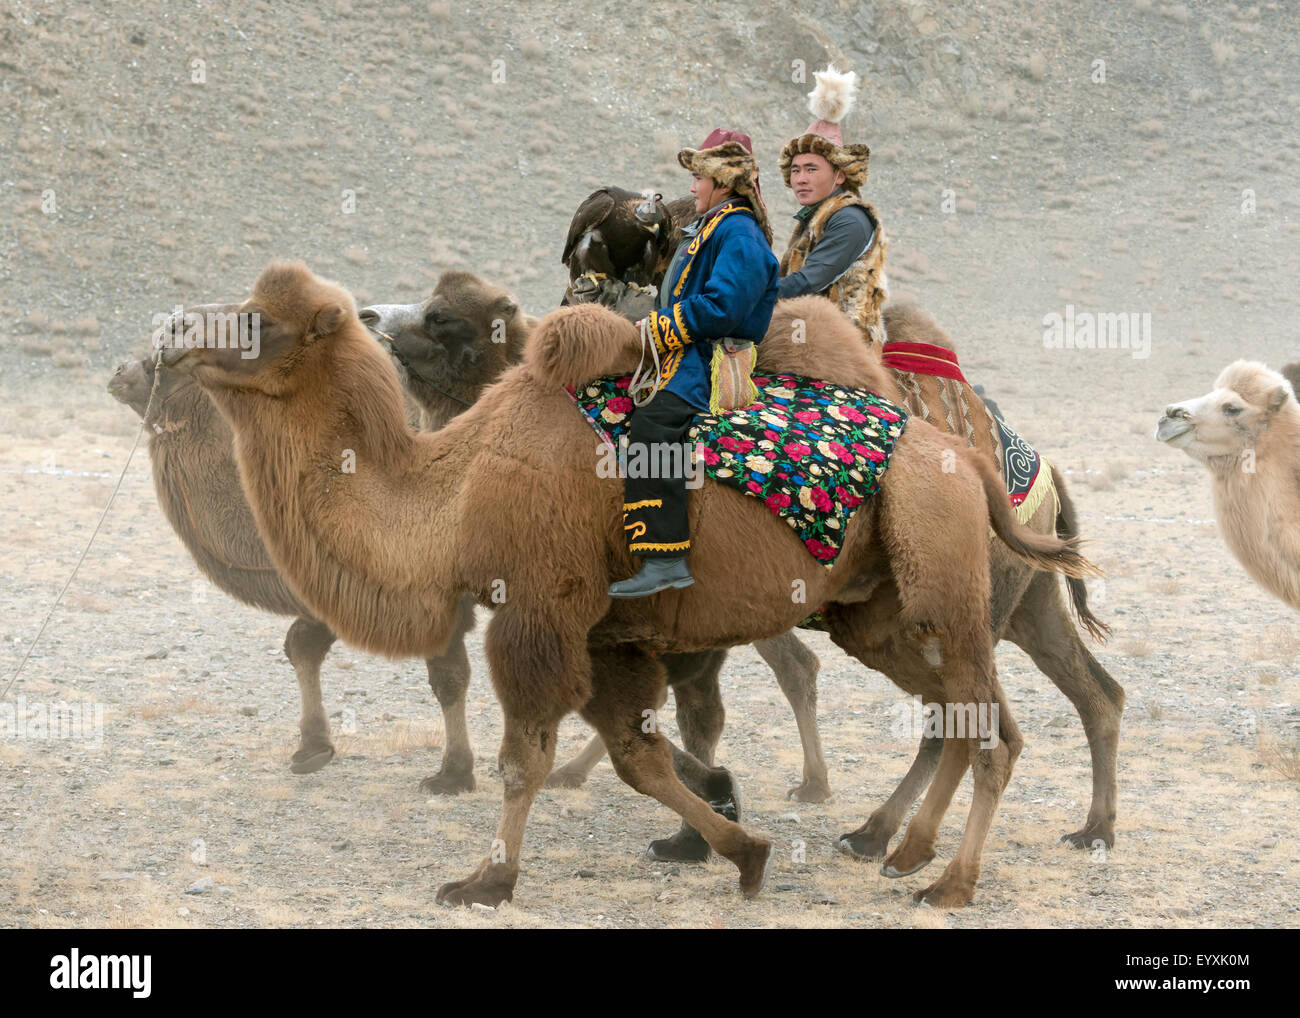 Los jinetes de camellos bactrianos con águilas reales, águilas Festival, Olgii, oeste de Mongolia Foto de stock